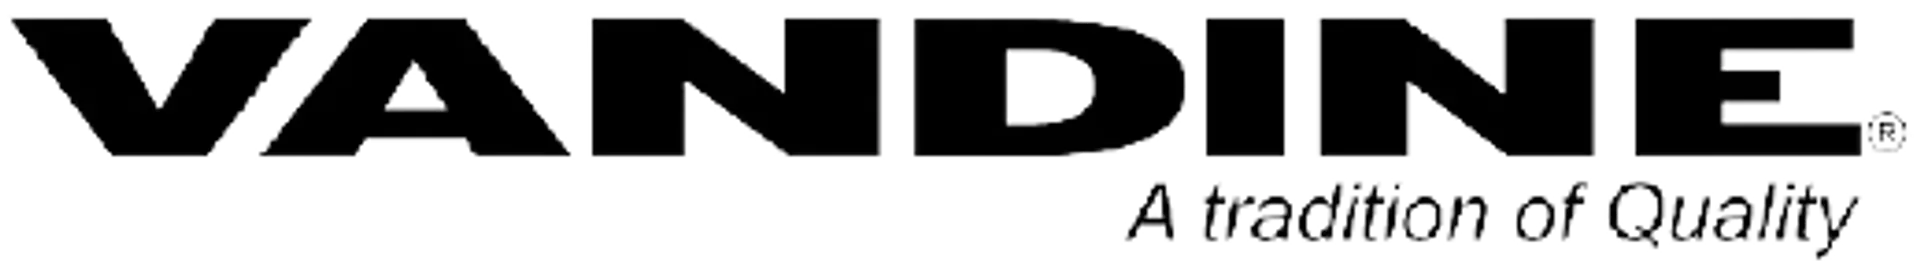 VANDINE logo de catálogo